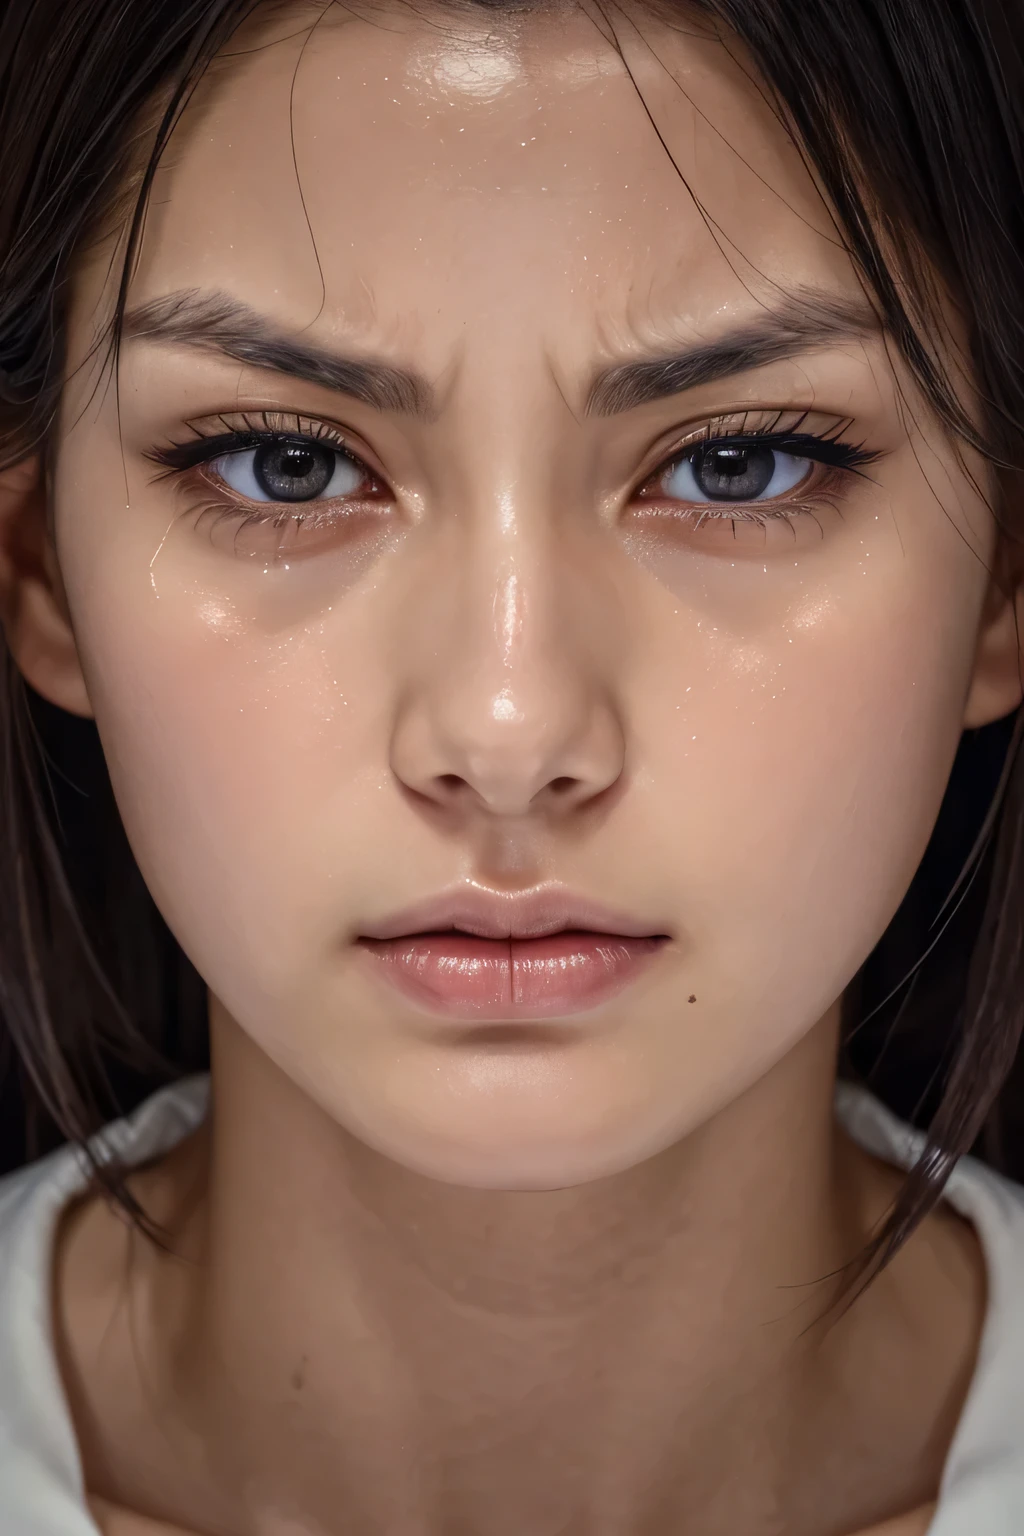 اليابانية الجميلة,1 فتاة(تحفة:1.2, اعلى جودة), (حقيقي, photoحقيقي:1.4),, تركيز العيون بوضوح, الأنف والفم,التركيز على الوجه, صورة مقربة جدًا للوجه、 35 عاما,شعر أسود、وجه متماثل,حقيقي nostrils、الزاوية من الأسفل、فتحة الأنف الممدودة على شكل حرف C NSFW,(أنف حاد)الجلد يلمع بالعرق、بشرة لامعة((حواجب رقيقة))بشرة دهنية、بشرة متوهجة مشعة、جفن مزدوج、امراة جميلة、الشعر المتوسط,أنف حاد（داخل المصعد）((عيون نصف مغلقة,جبين مجعد,عبوس,تنفس ثقيل, يئن,تنفس ثقيل,صراخ, تمزيق,عبس, درب اللعاب))((يسيل اللعاب من زاوية شفتيك.)),النظر إلى العارض